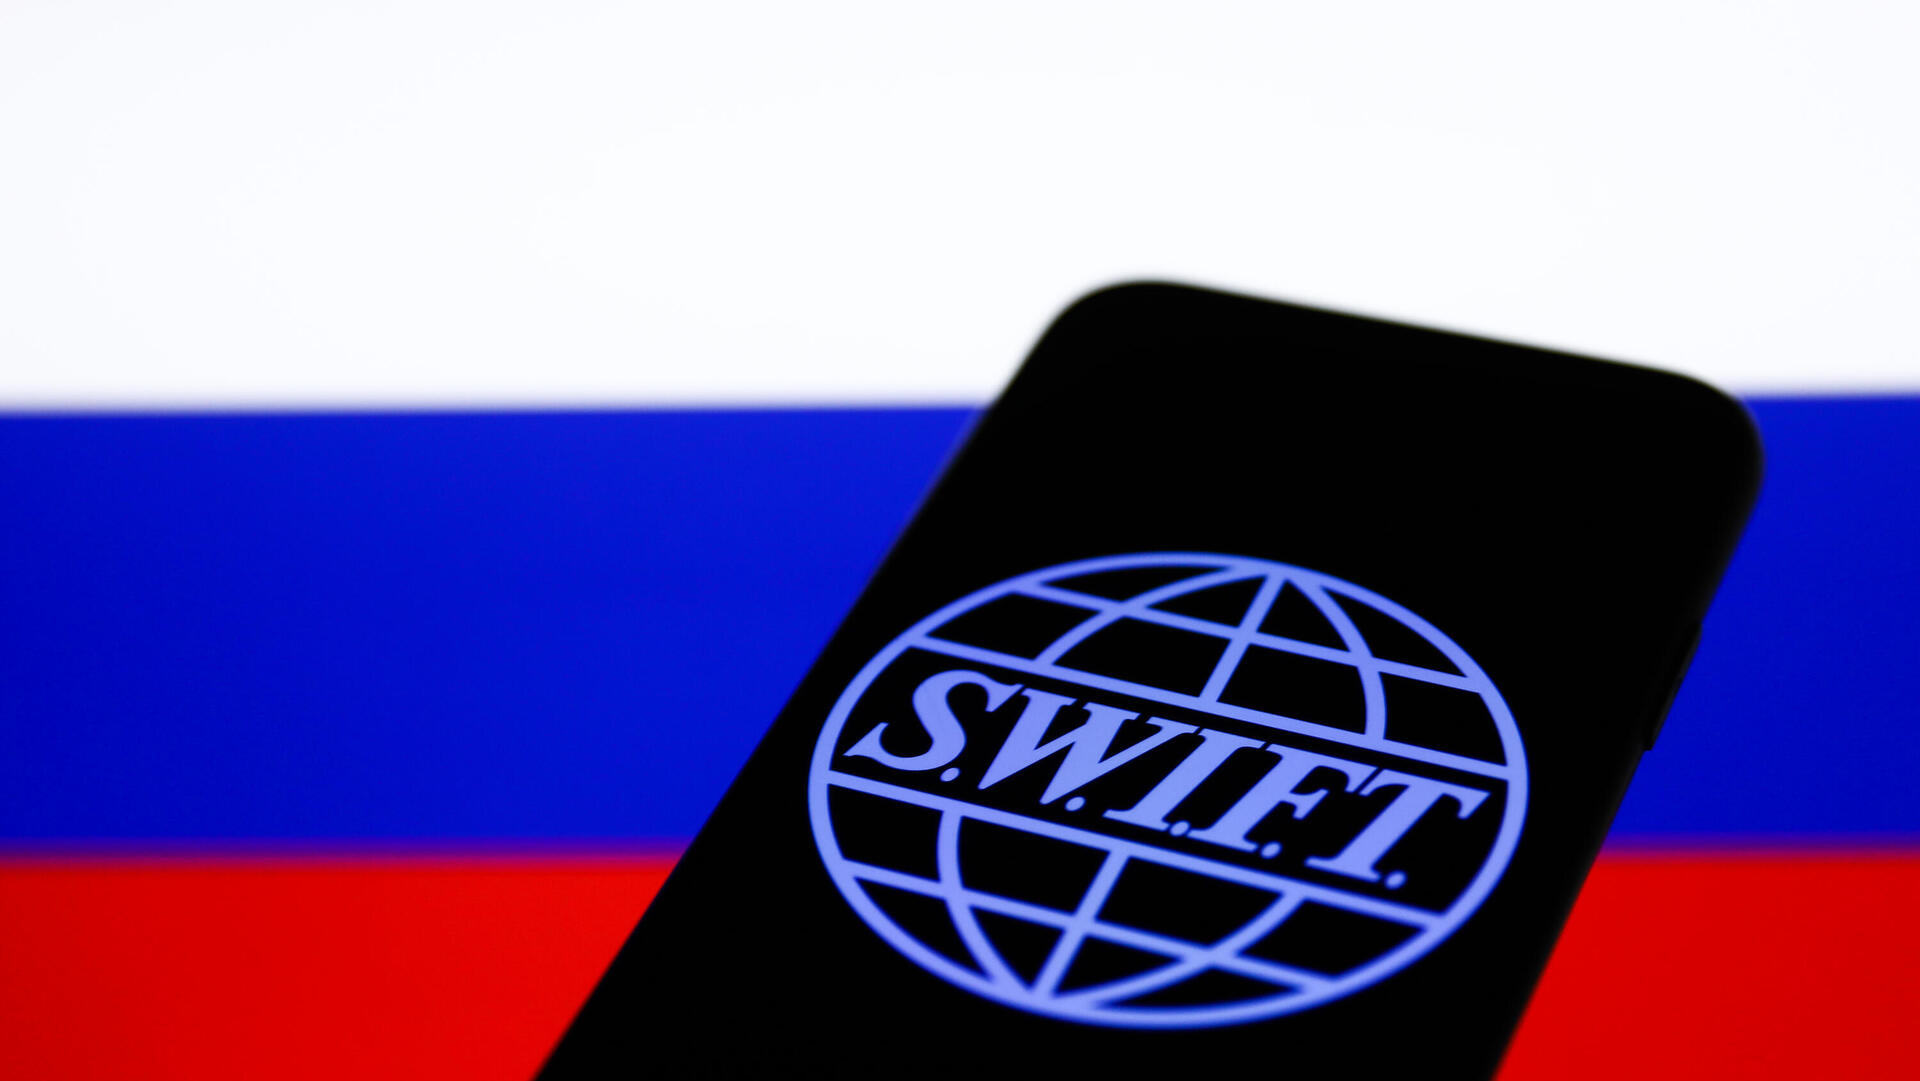 הלוגו של SWIFT על רקע דגל רוסיה